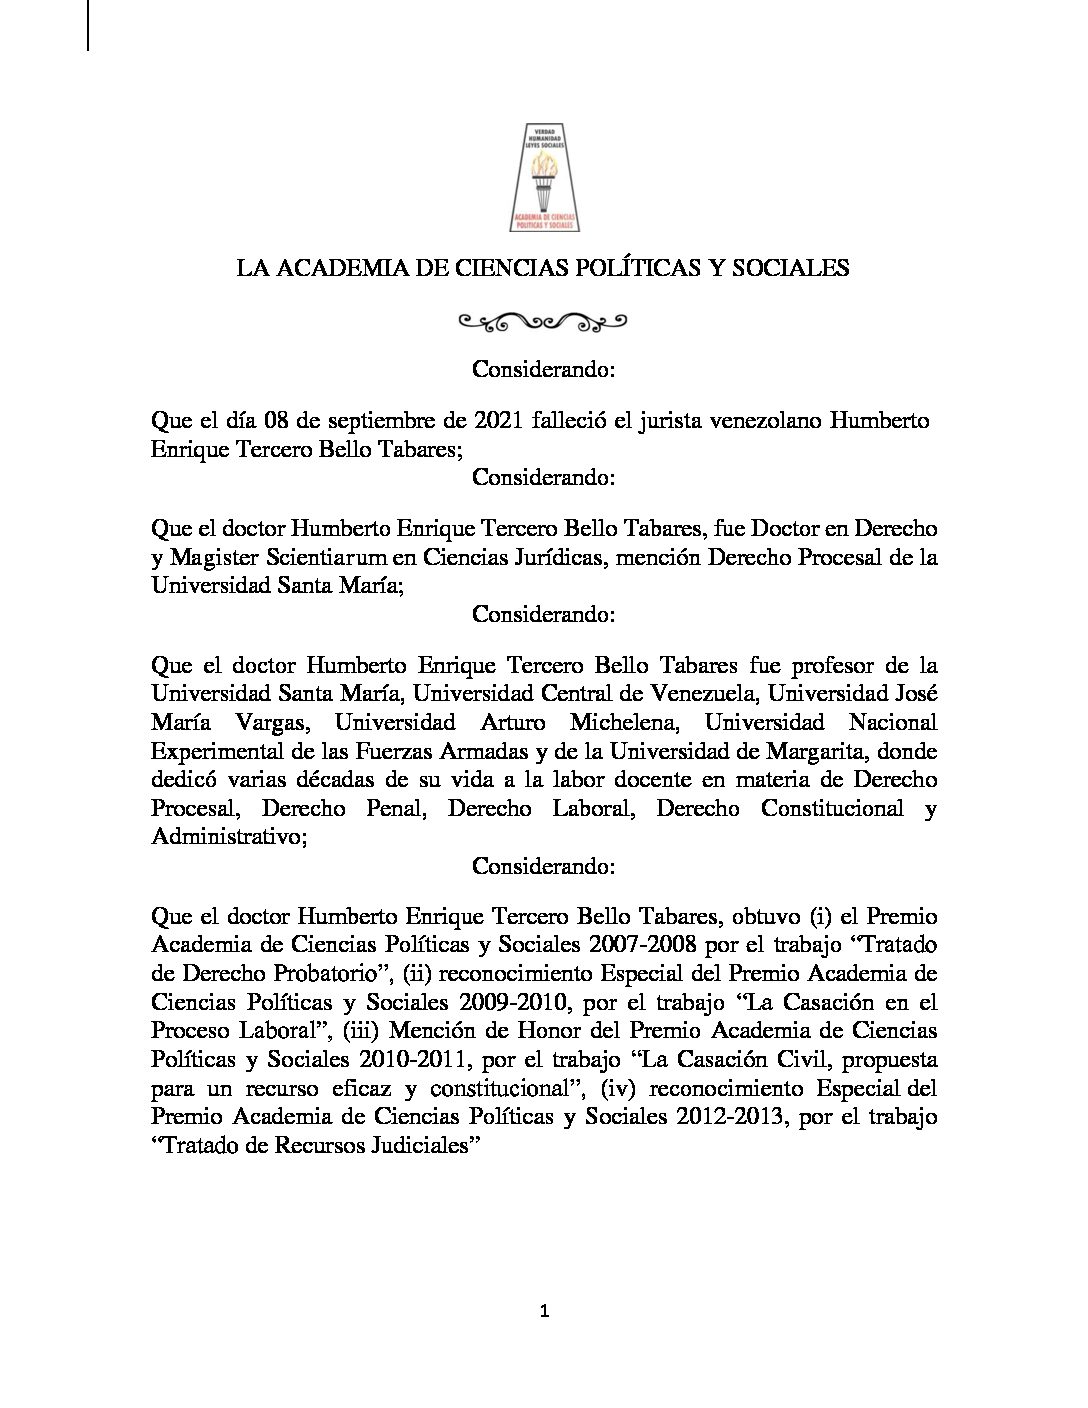 Acuerdo de duelo por el lamentable fallecimiento del doctor Humberto Enrique III Bello Tabares